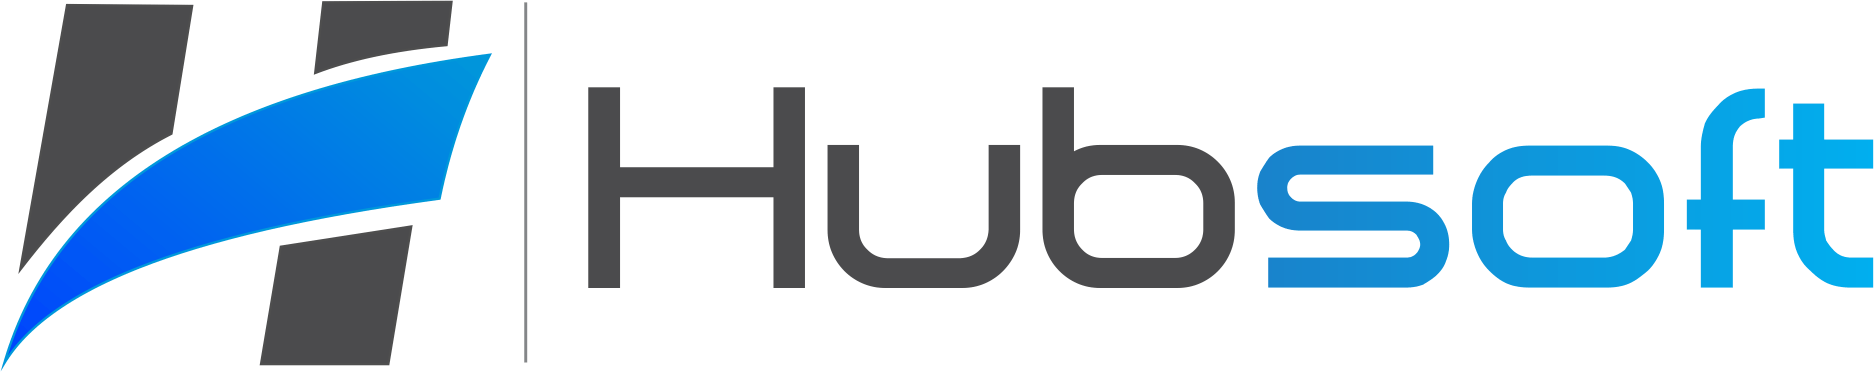 HubSoft